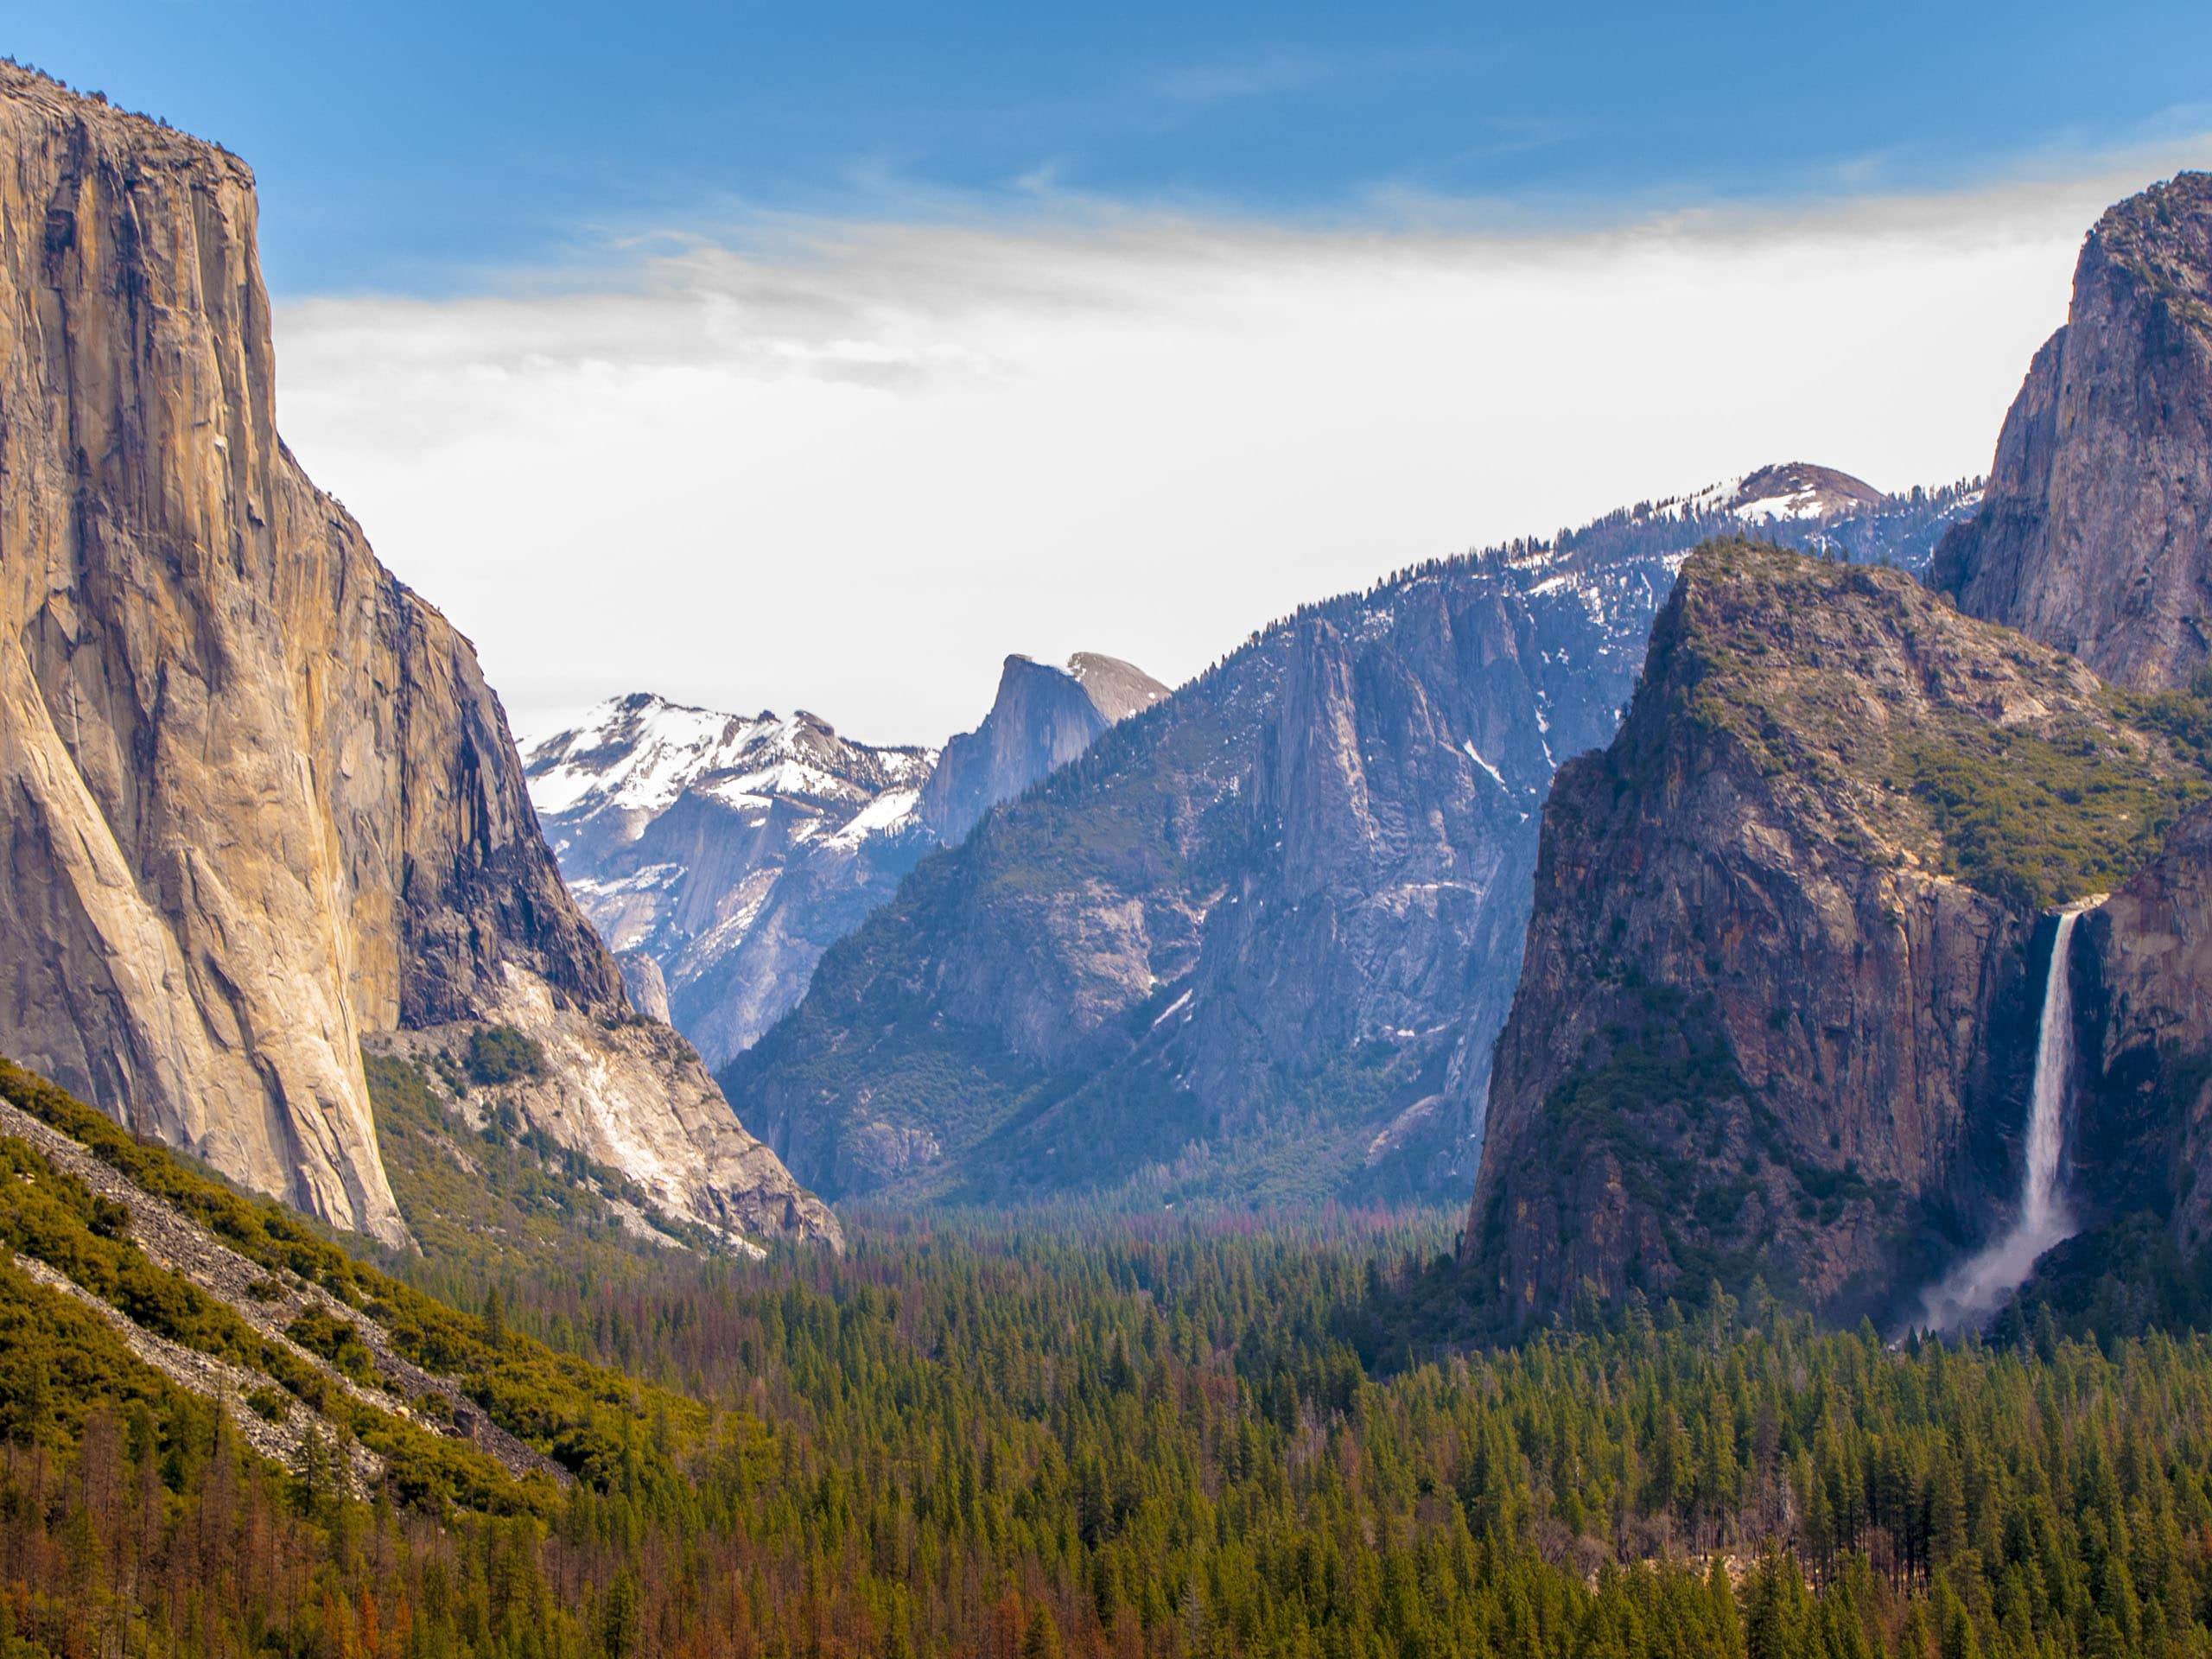 John Muir Trail - Yosemite National Park